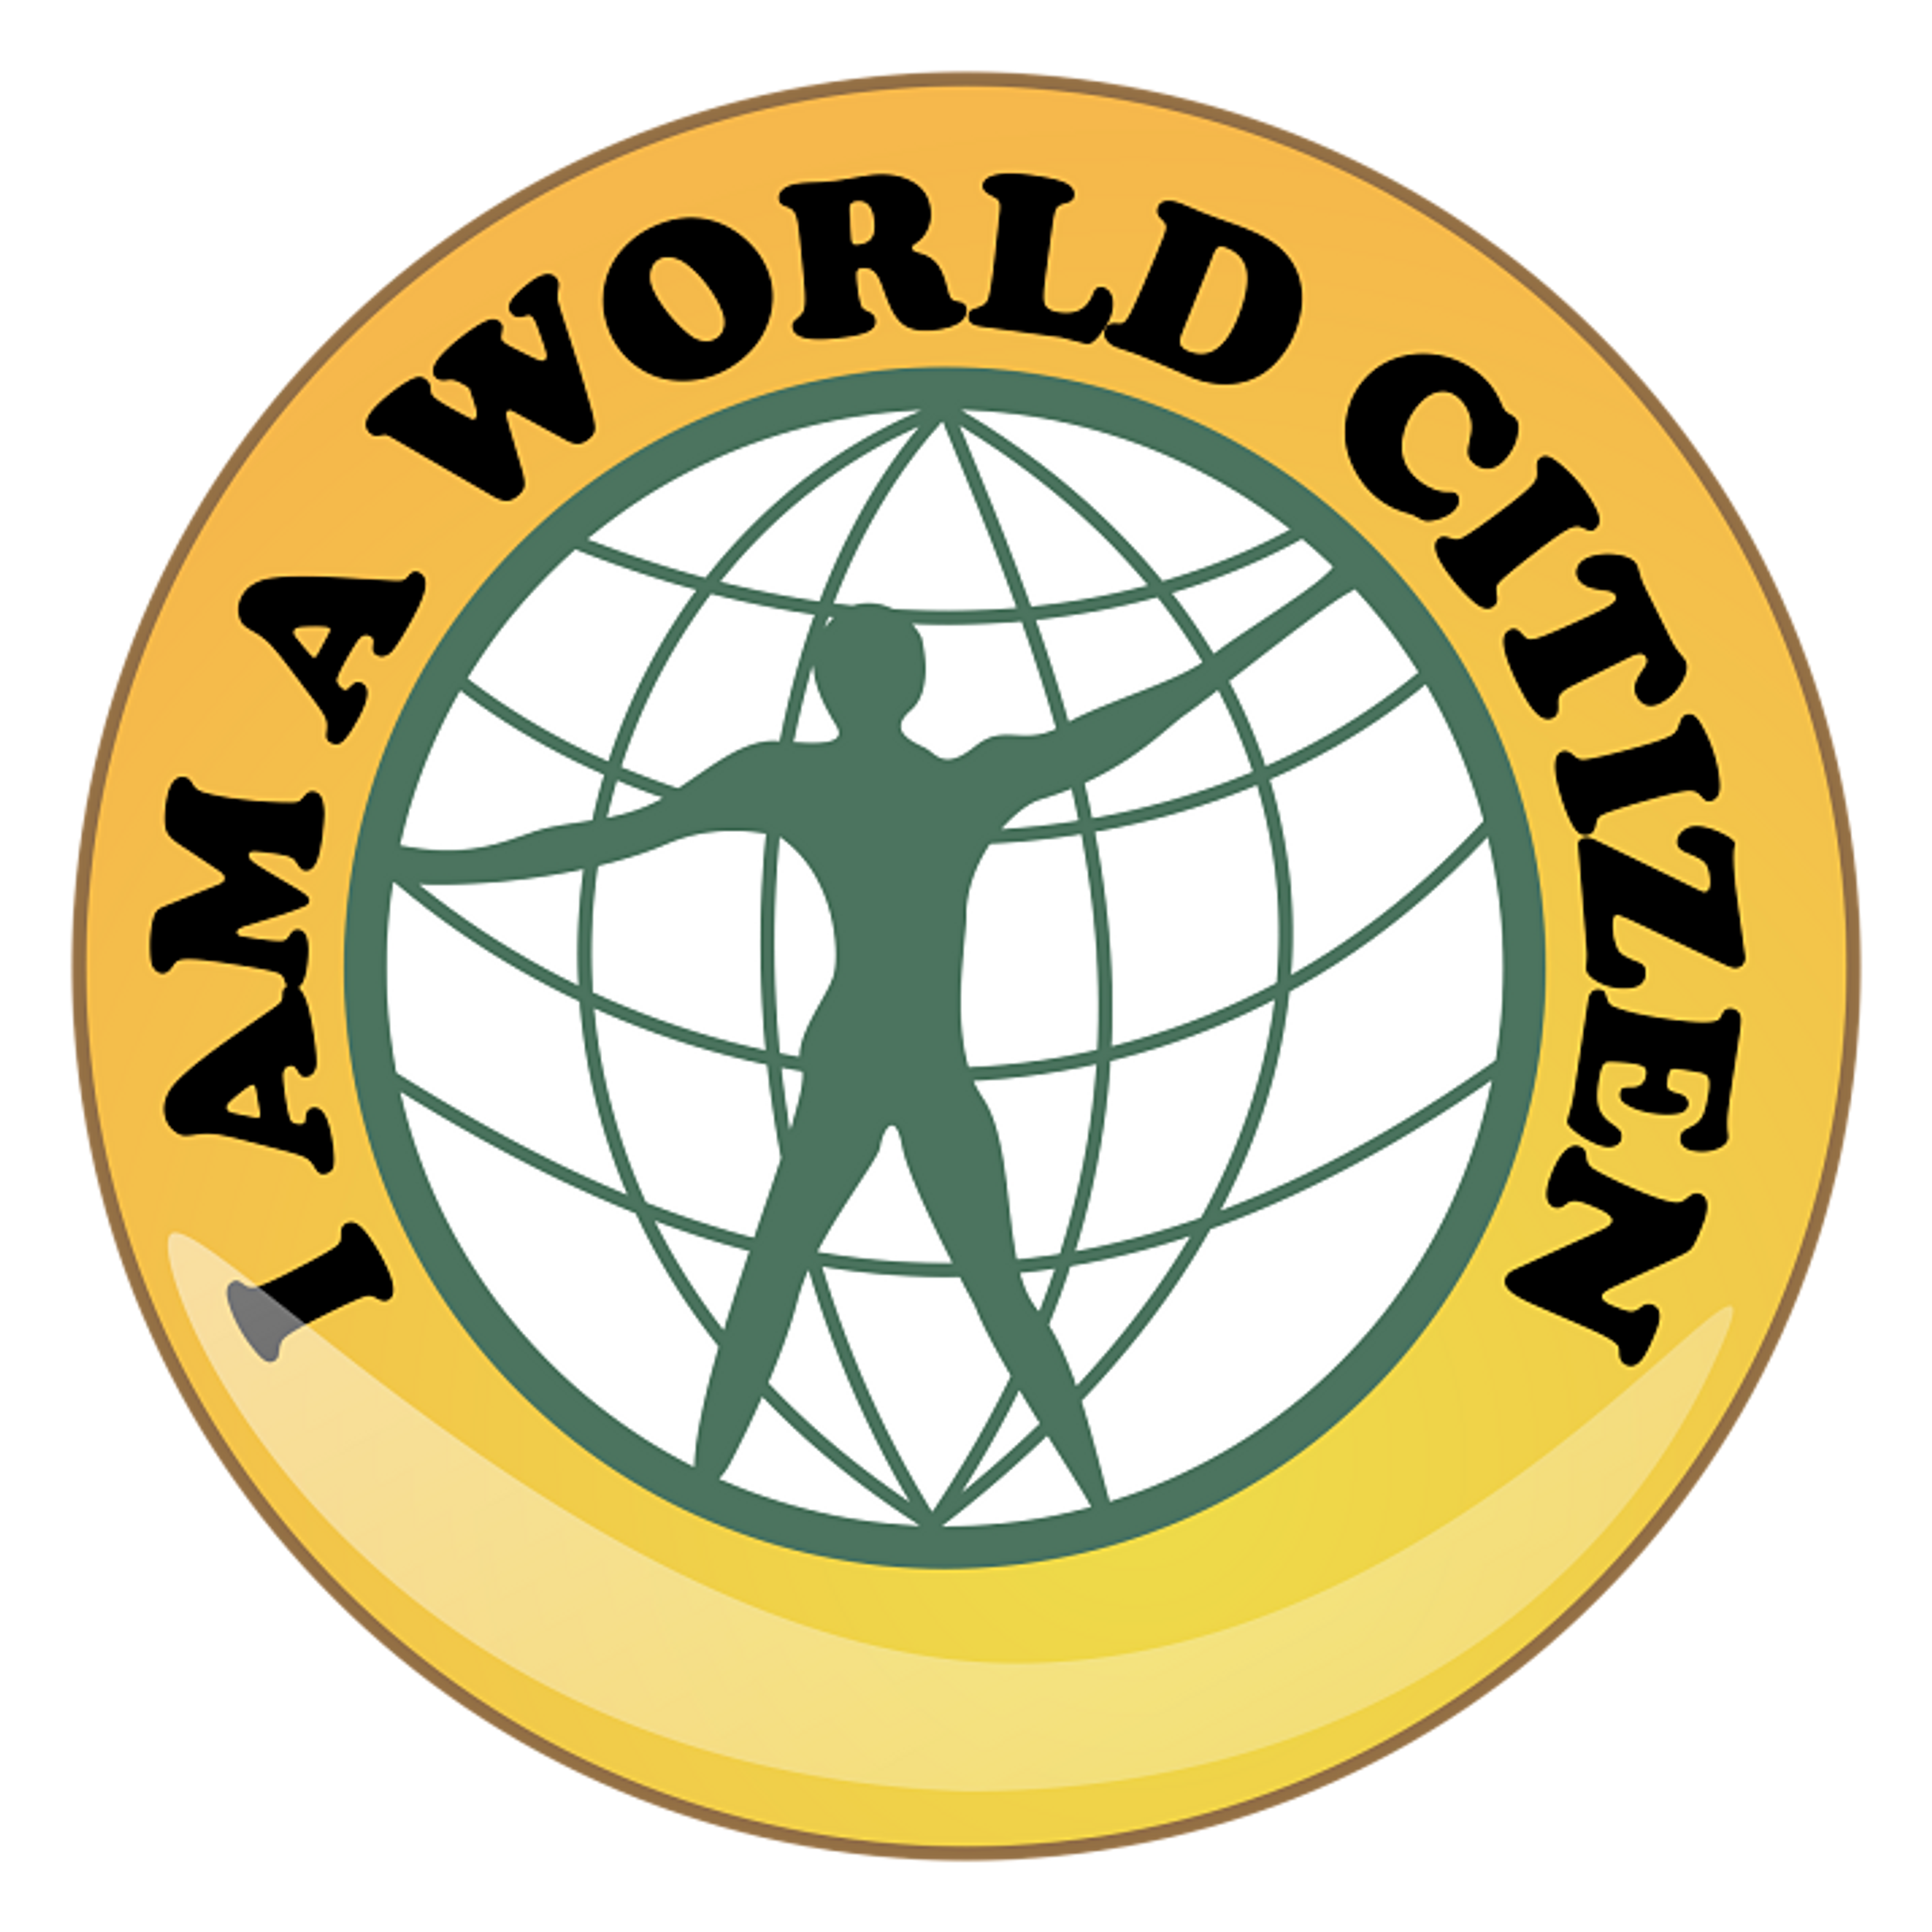 World_citizen_badge_opt